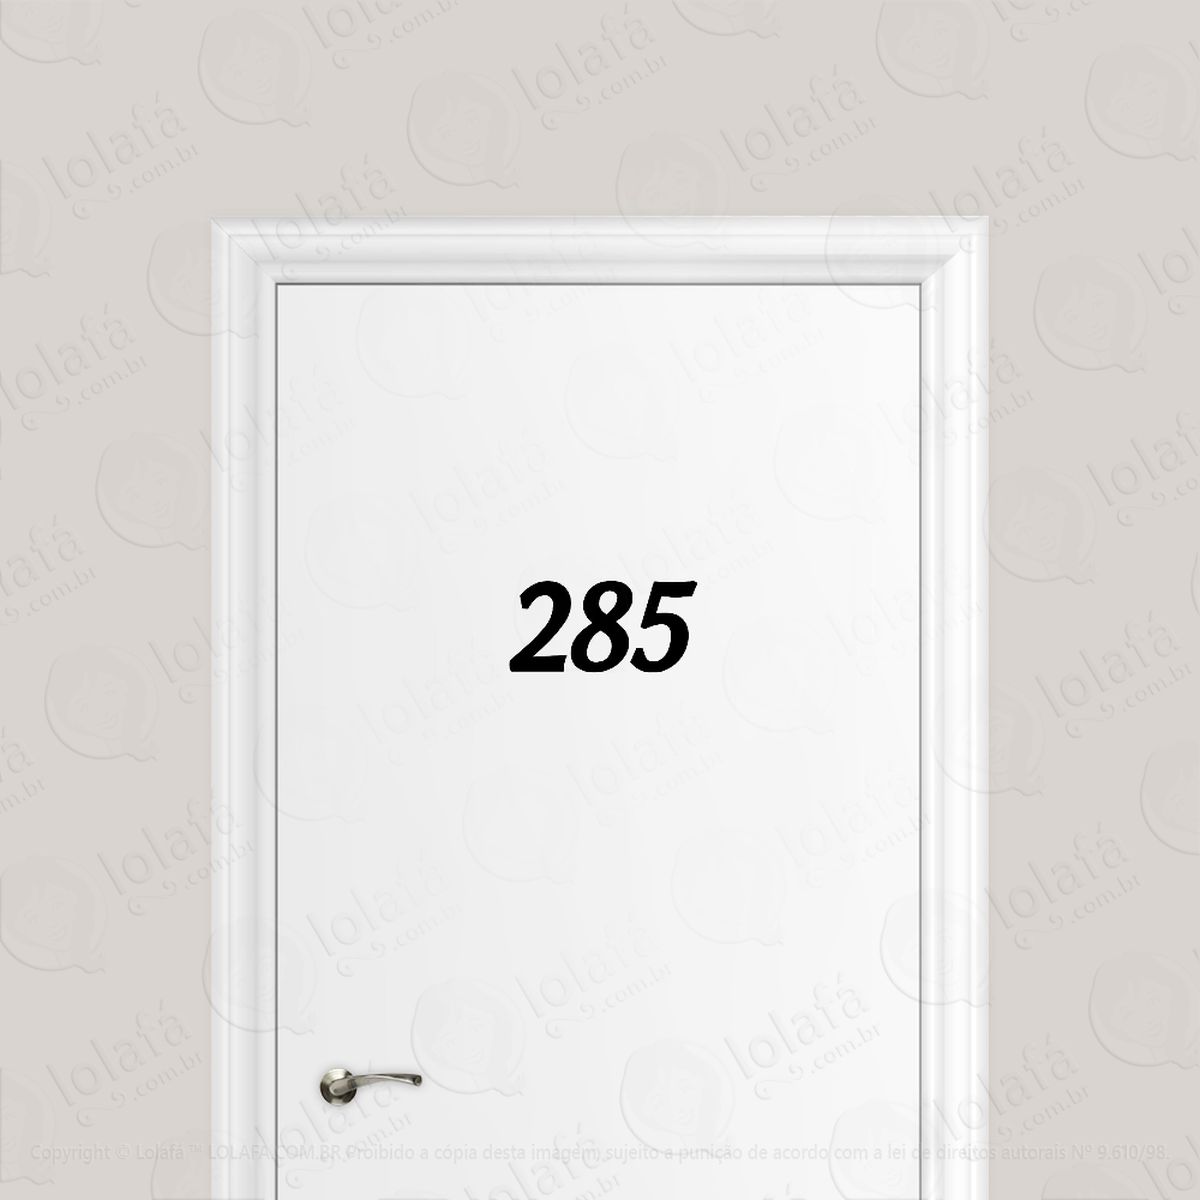 número residencial adesivo premium p/ porta  escolha 3 díg. mod:219